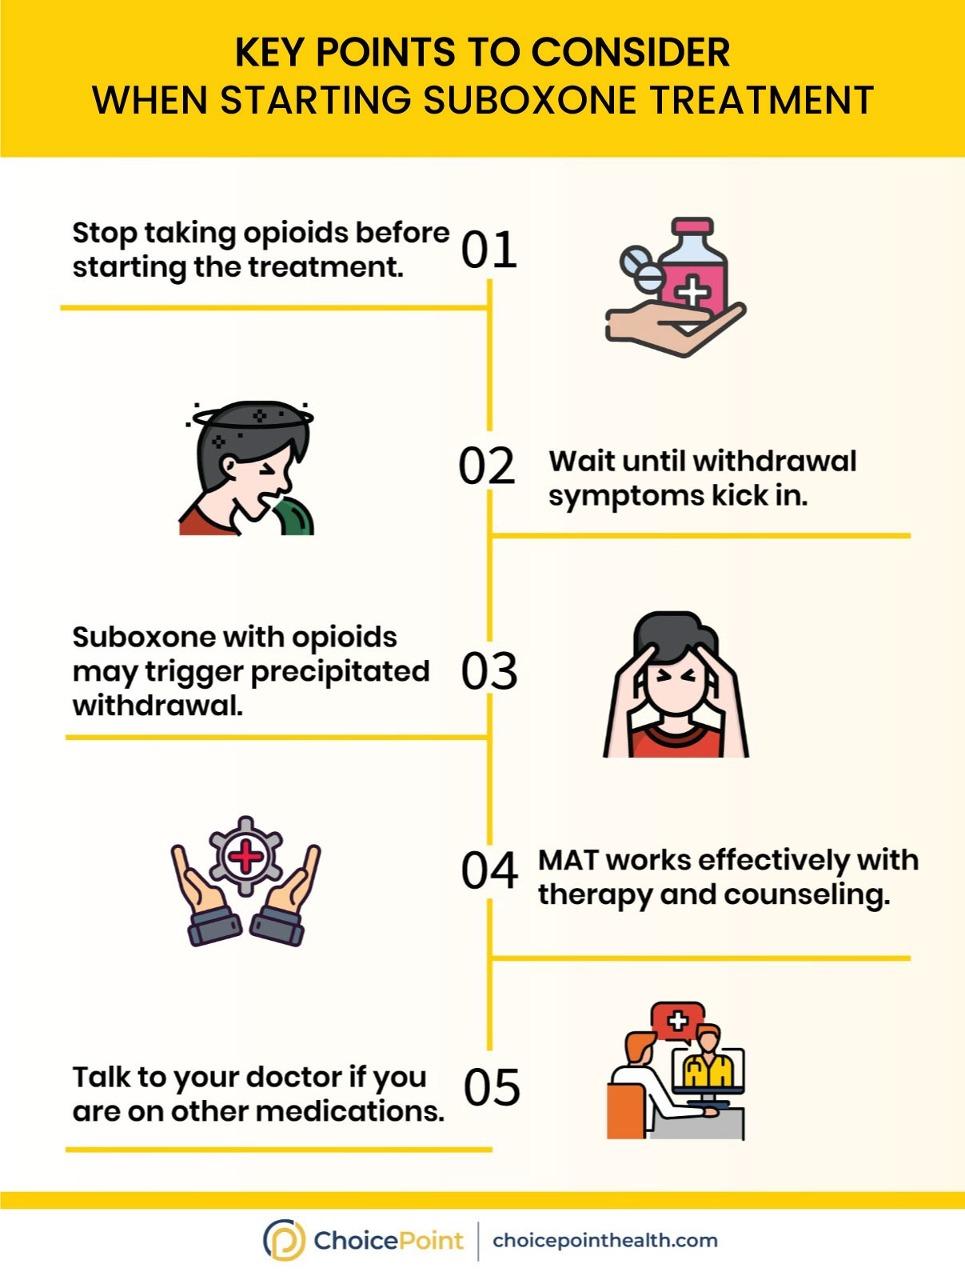 How to Start Buprenorphine/naloxone